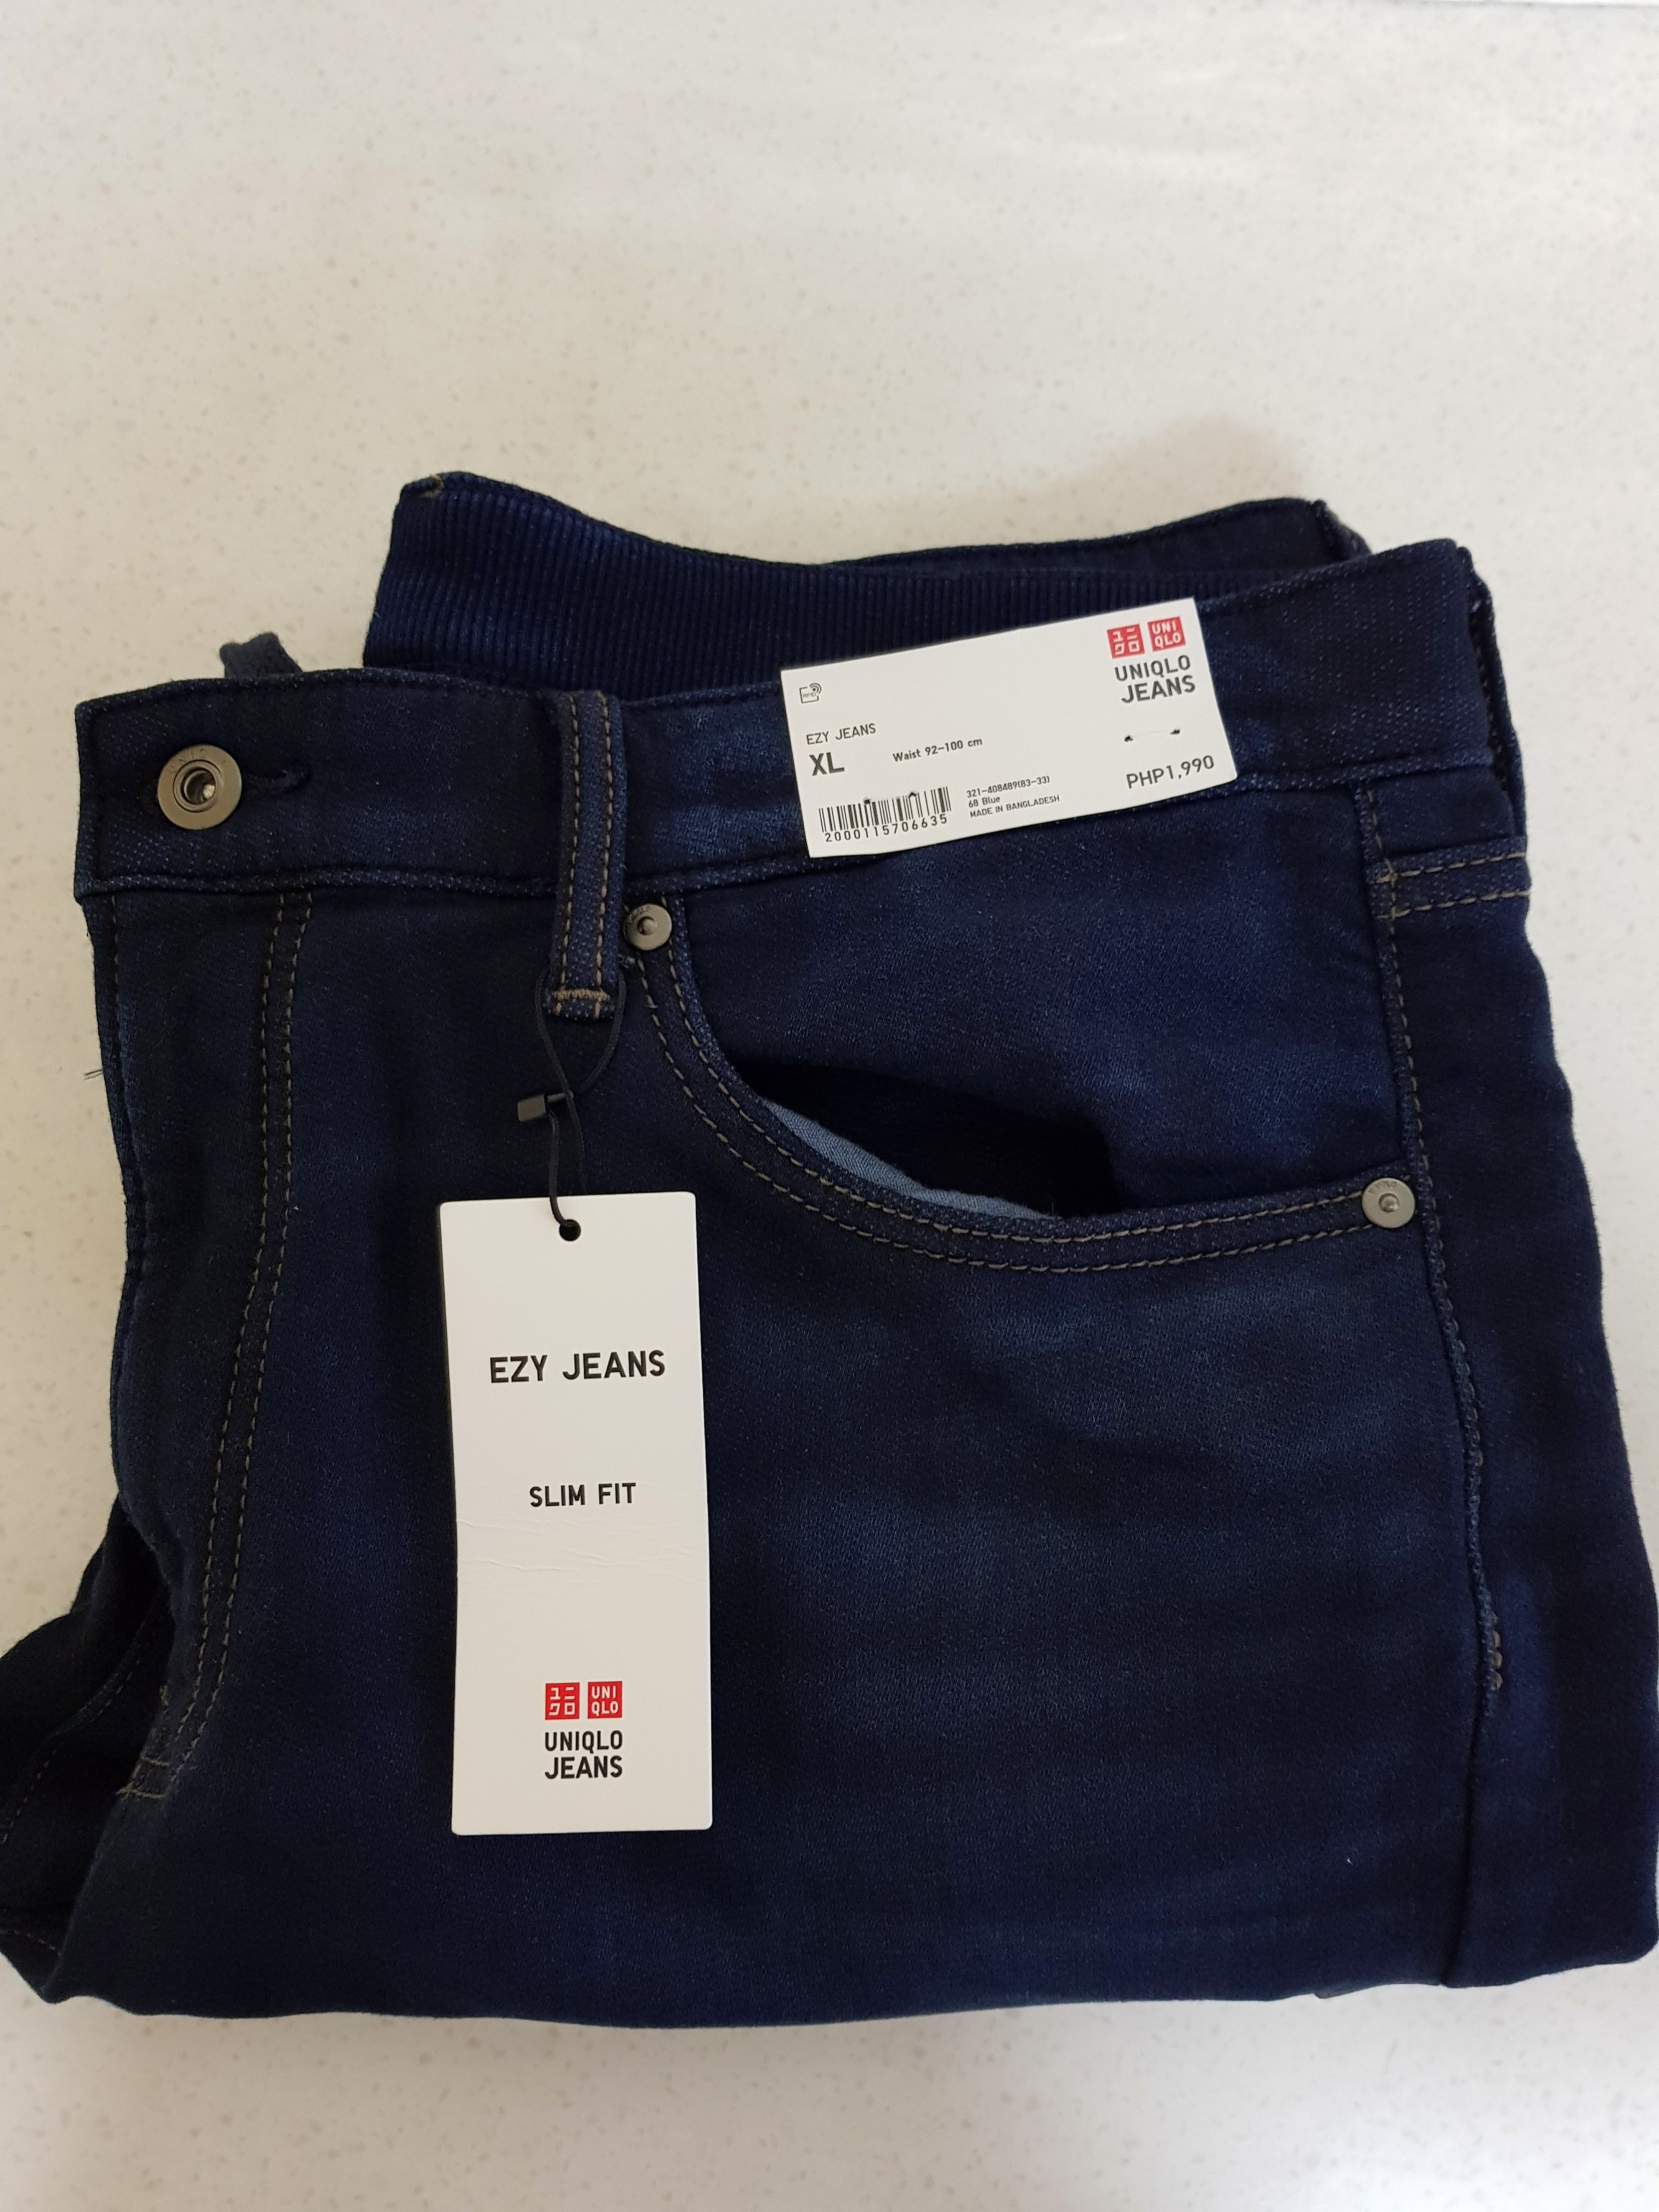 uniqlo jeans price